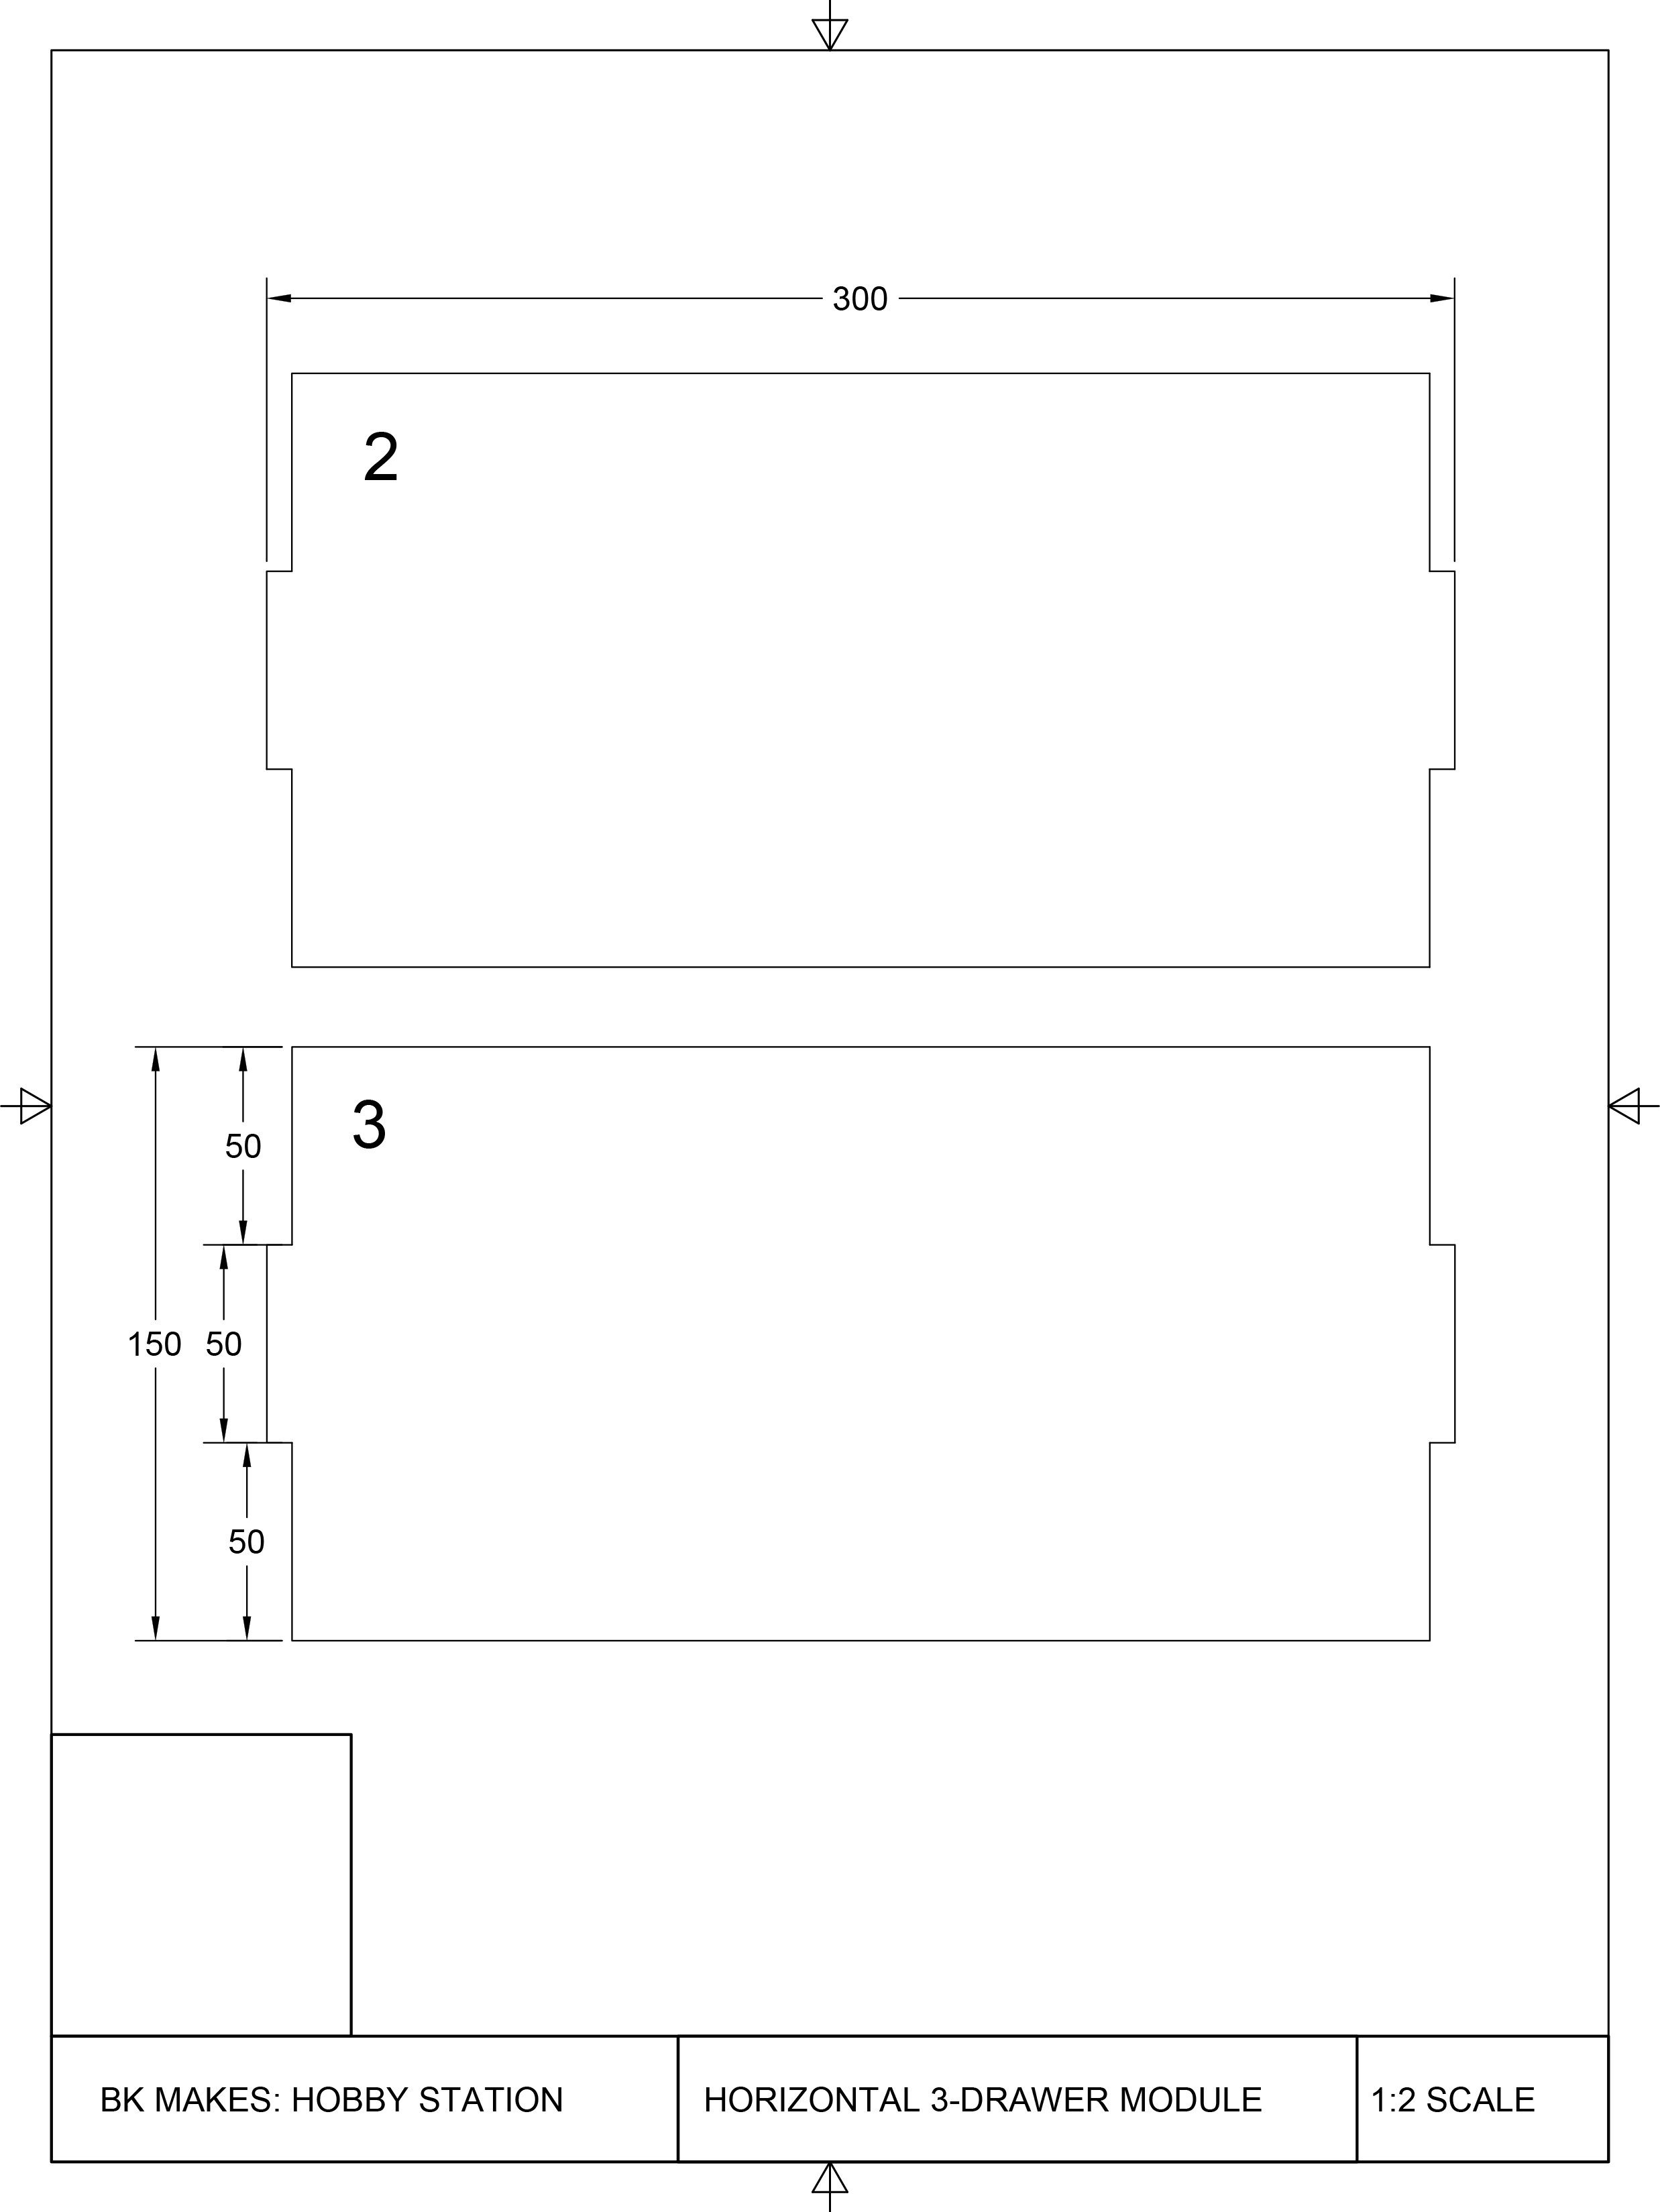 Horizontal 3-Drawer Module Templates-3.jpg